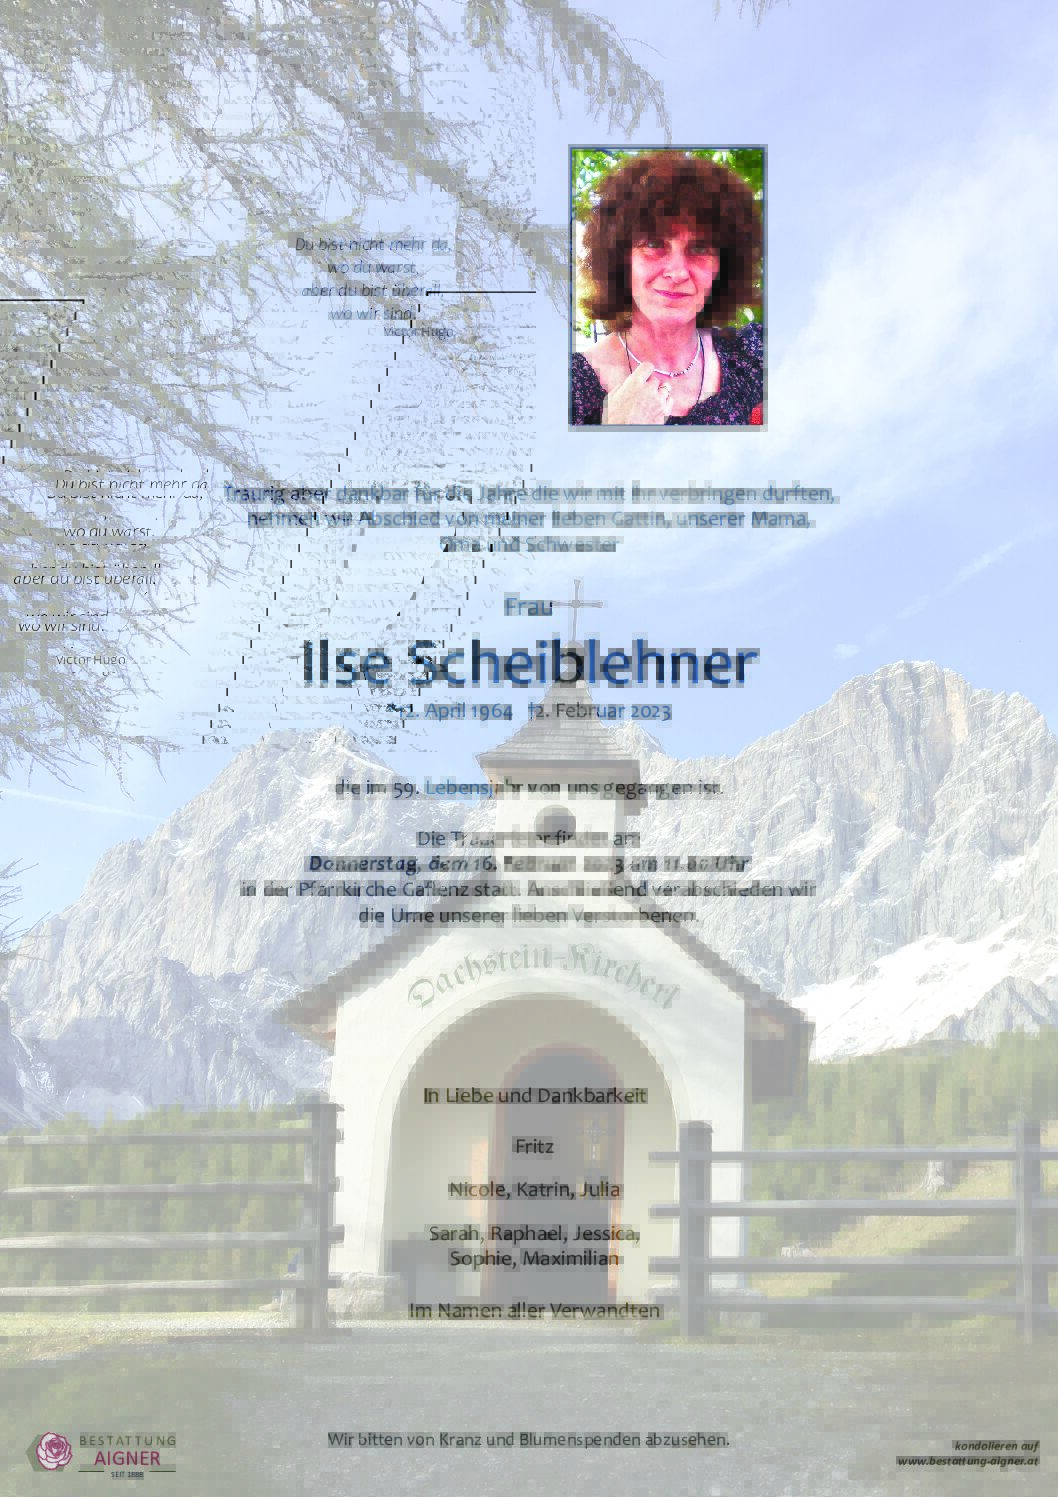 Ilse Scheiblehner